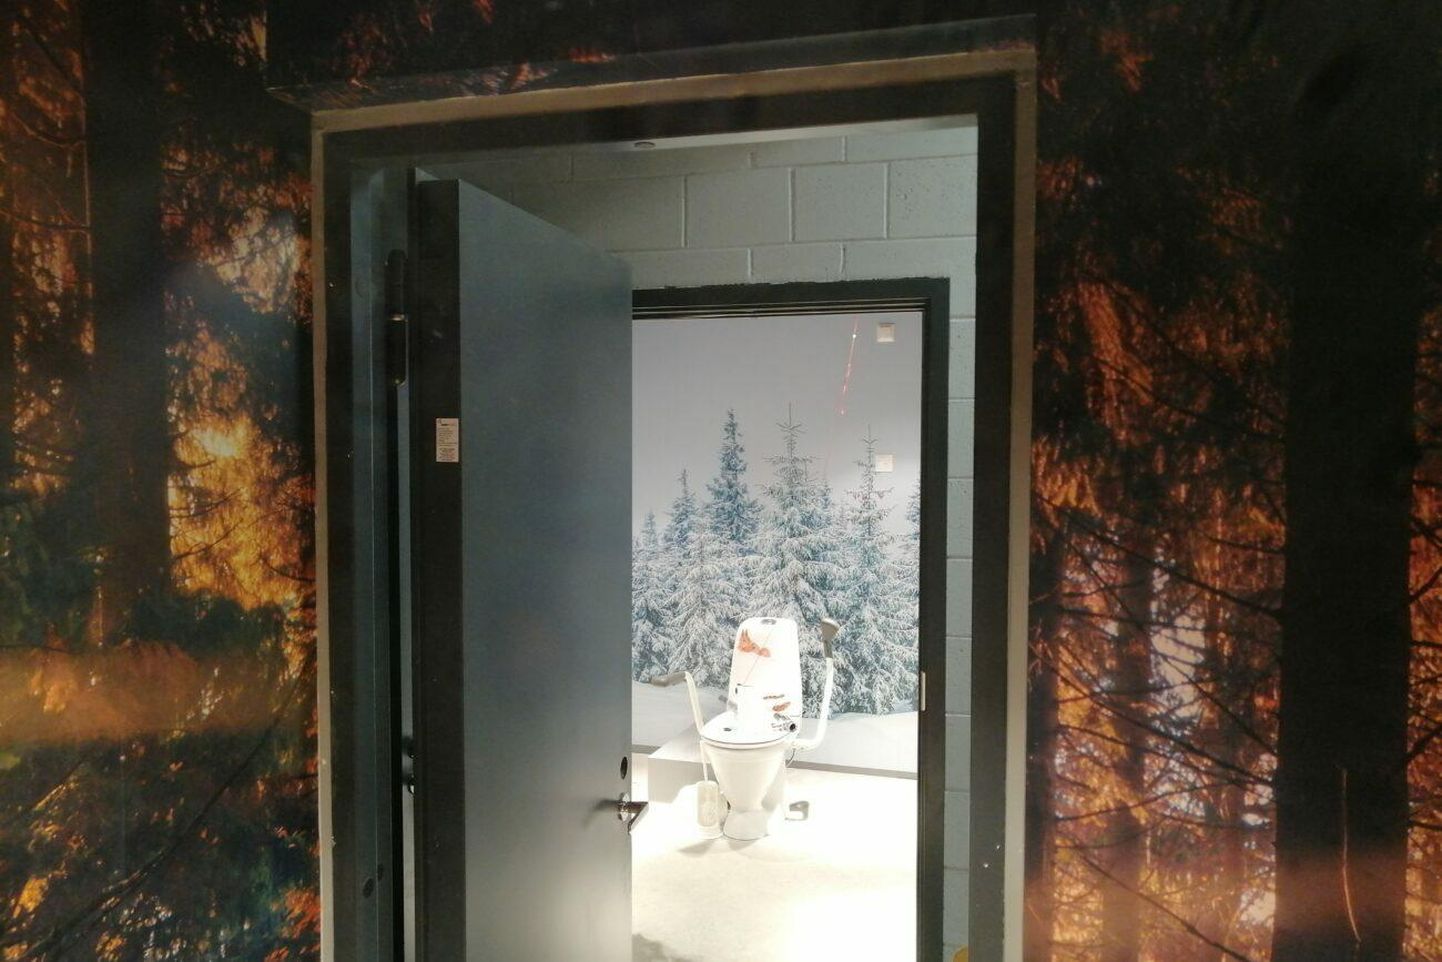 Ääsmäe Käramaja tualettruumid sündisid kunstniku käe all. Siin saab igal ­aastaajal astuda kas kevadesse, suvesse, sügisesse või talve.

 